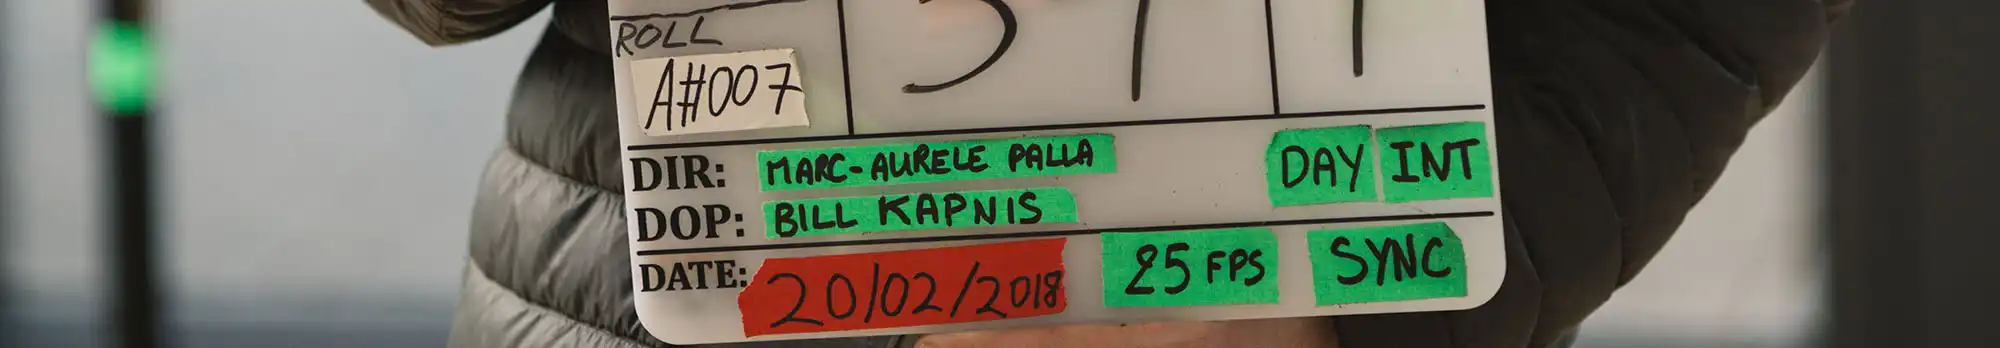 Films by Marc-Aurèle Palla